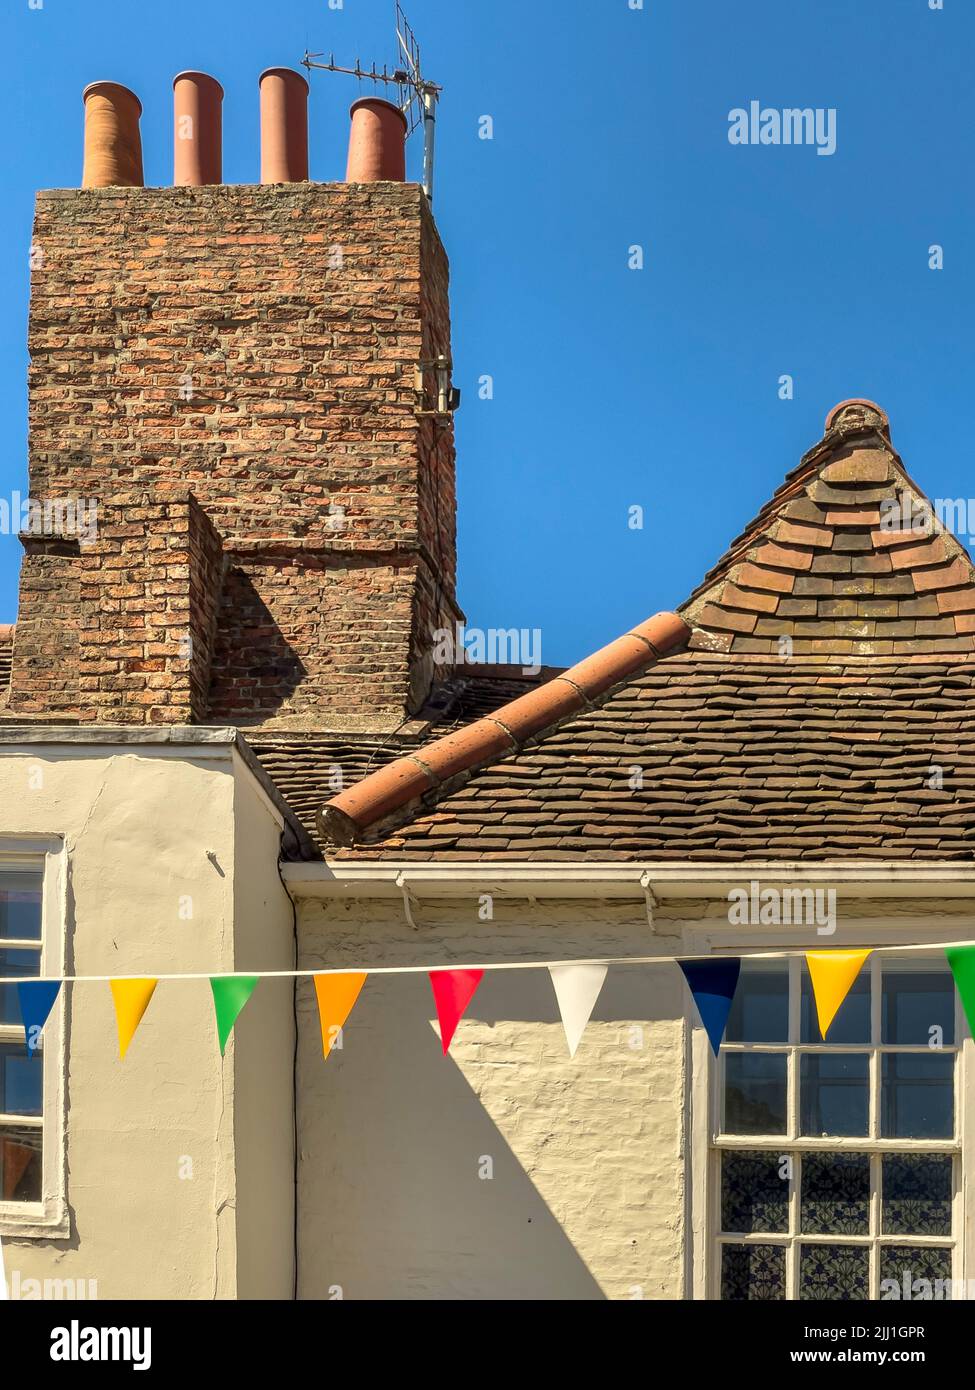 Antiguo tejado de azulejos en el centro de York con banderitas de colores, Reino Unido Foto de stock